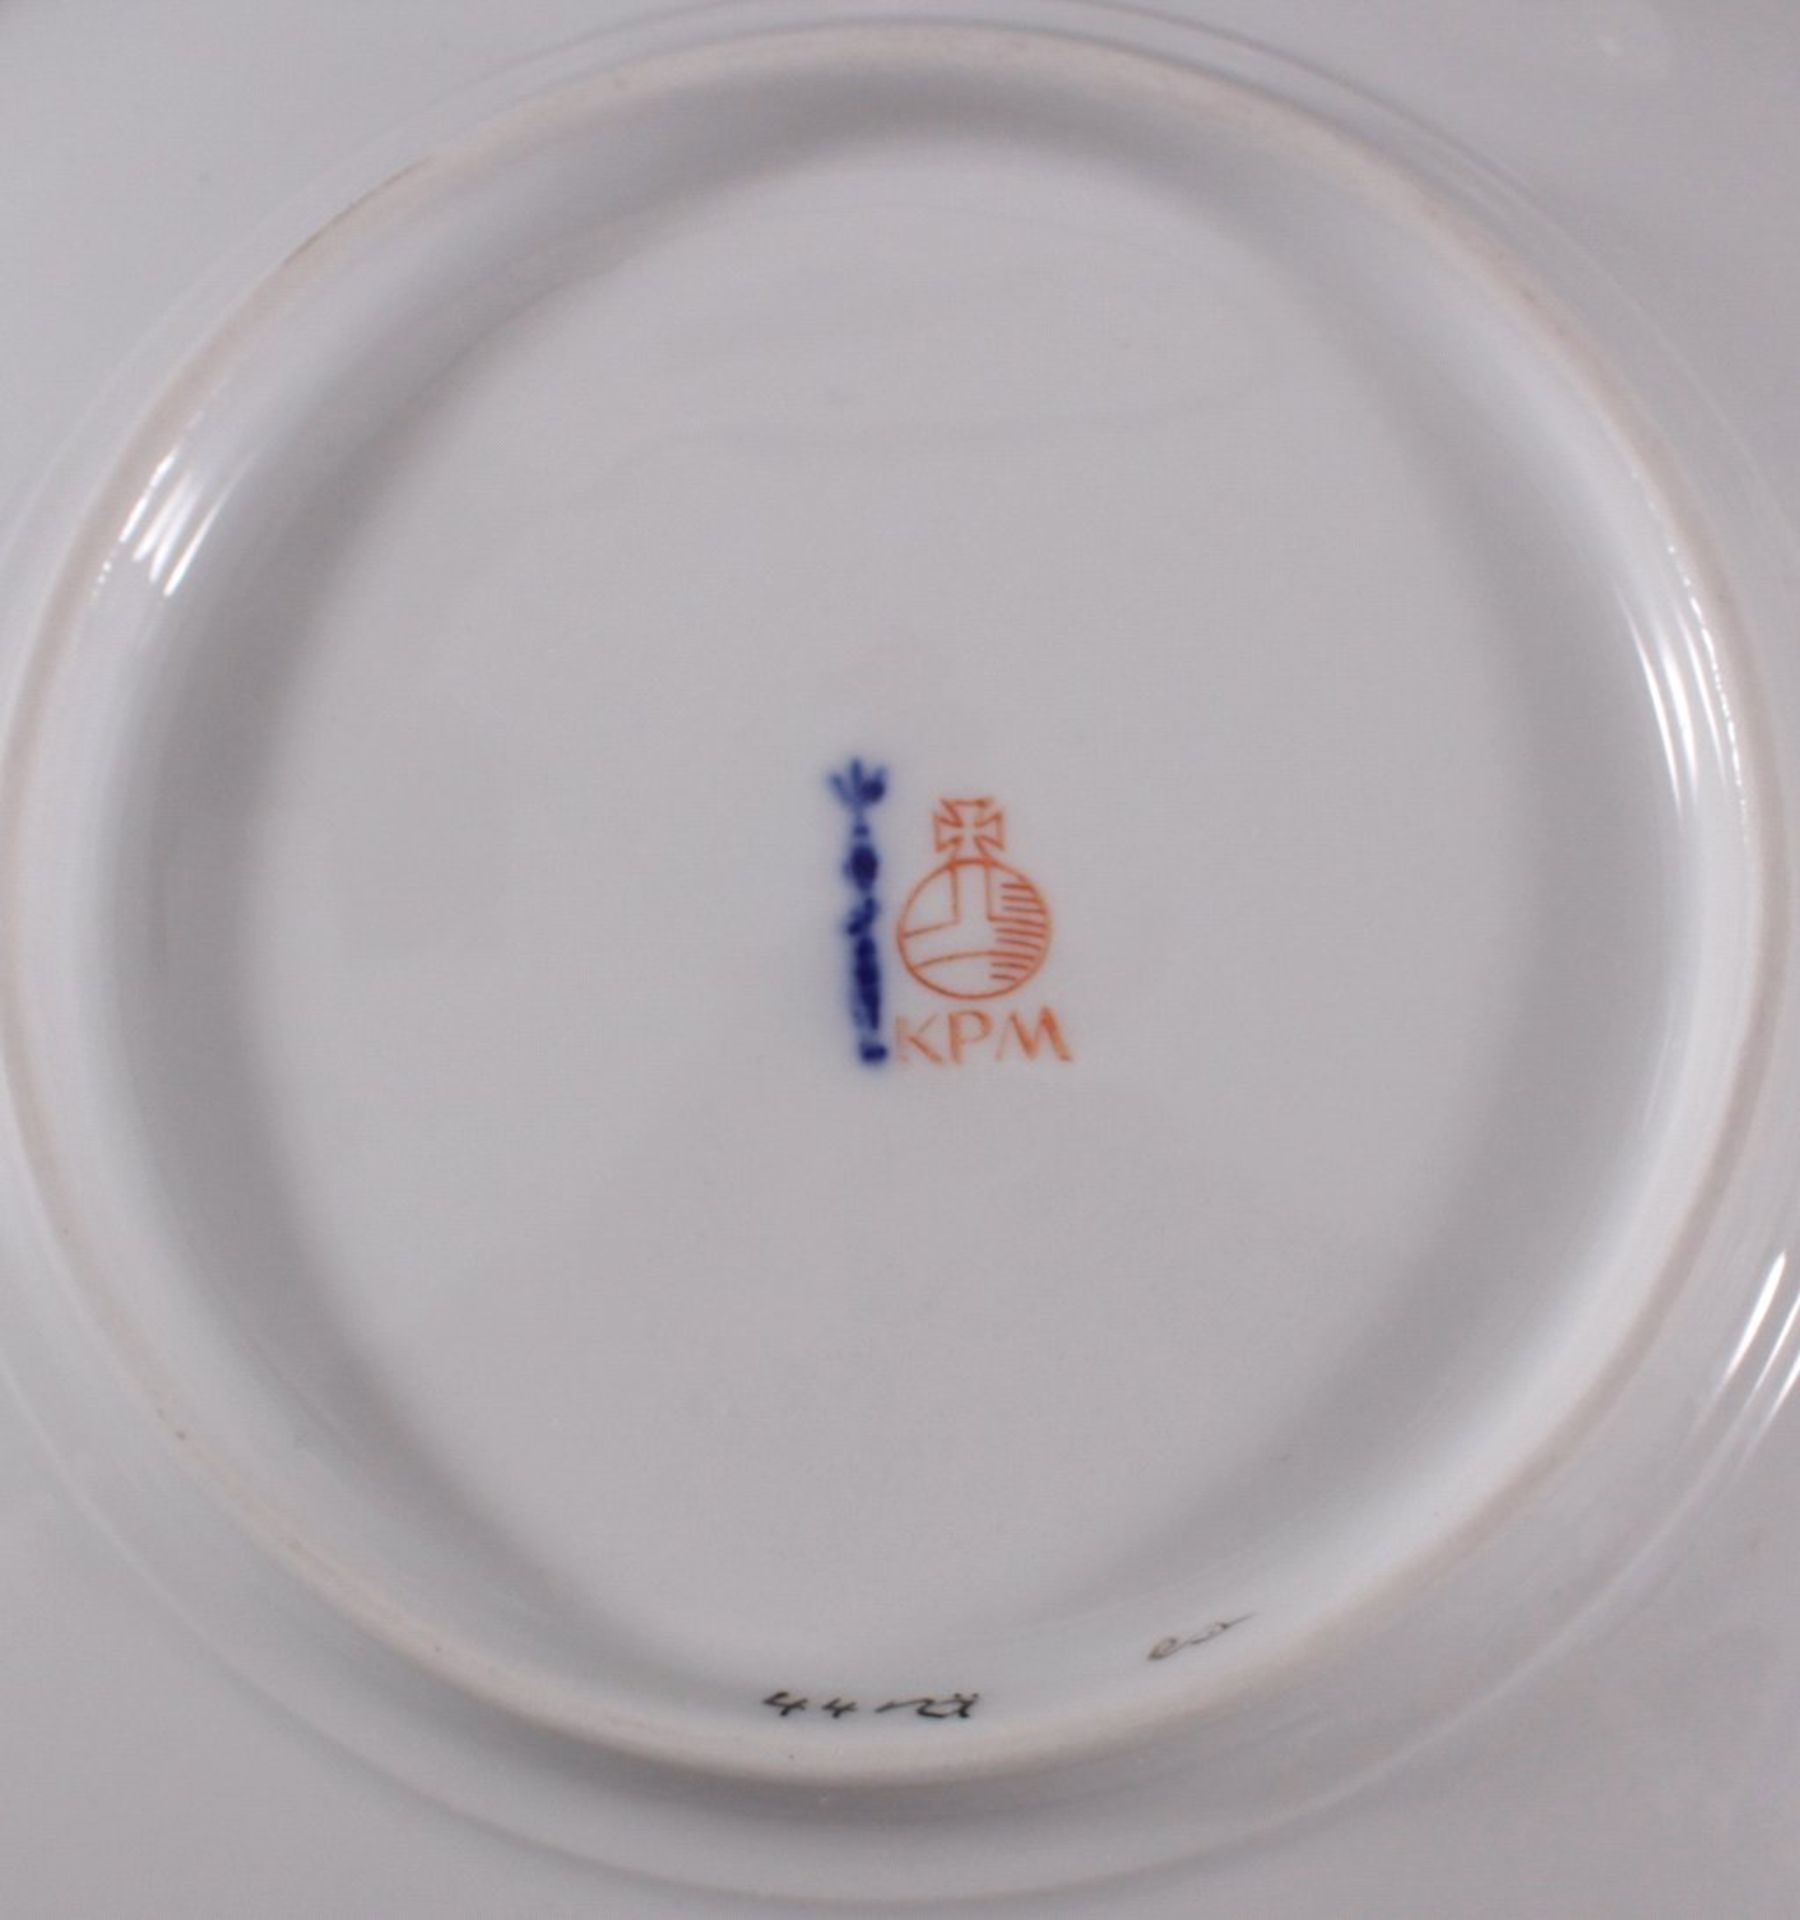 4 tiefe KPM TellerBlumenmalerei, Goldrand, blaue Zeptermarke, roterReichsapfel, ca. D- 18 cm - Bild 2 aus 2